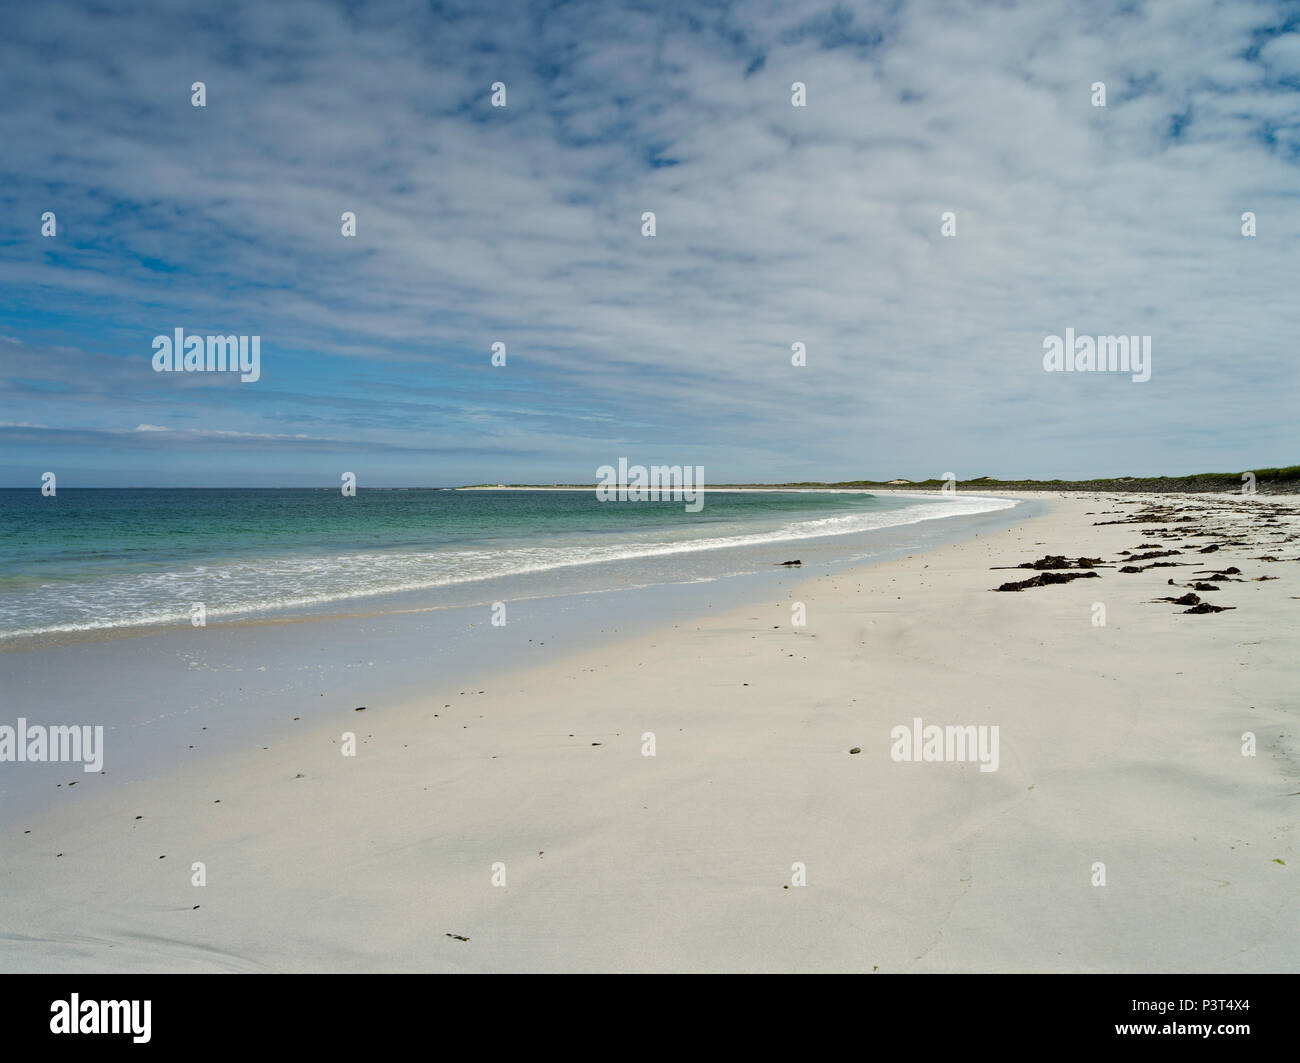 dh Whitemill Bay Beach SANDAY ORKNEY Scozia Isola del nord spiagge remote Nessuno costa vuota sabbia bianca regno unito isole scozzesi sabbie sabbiose spiagge sabbiose Foto Stock